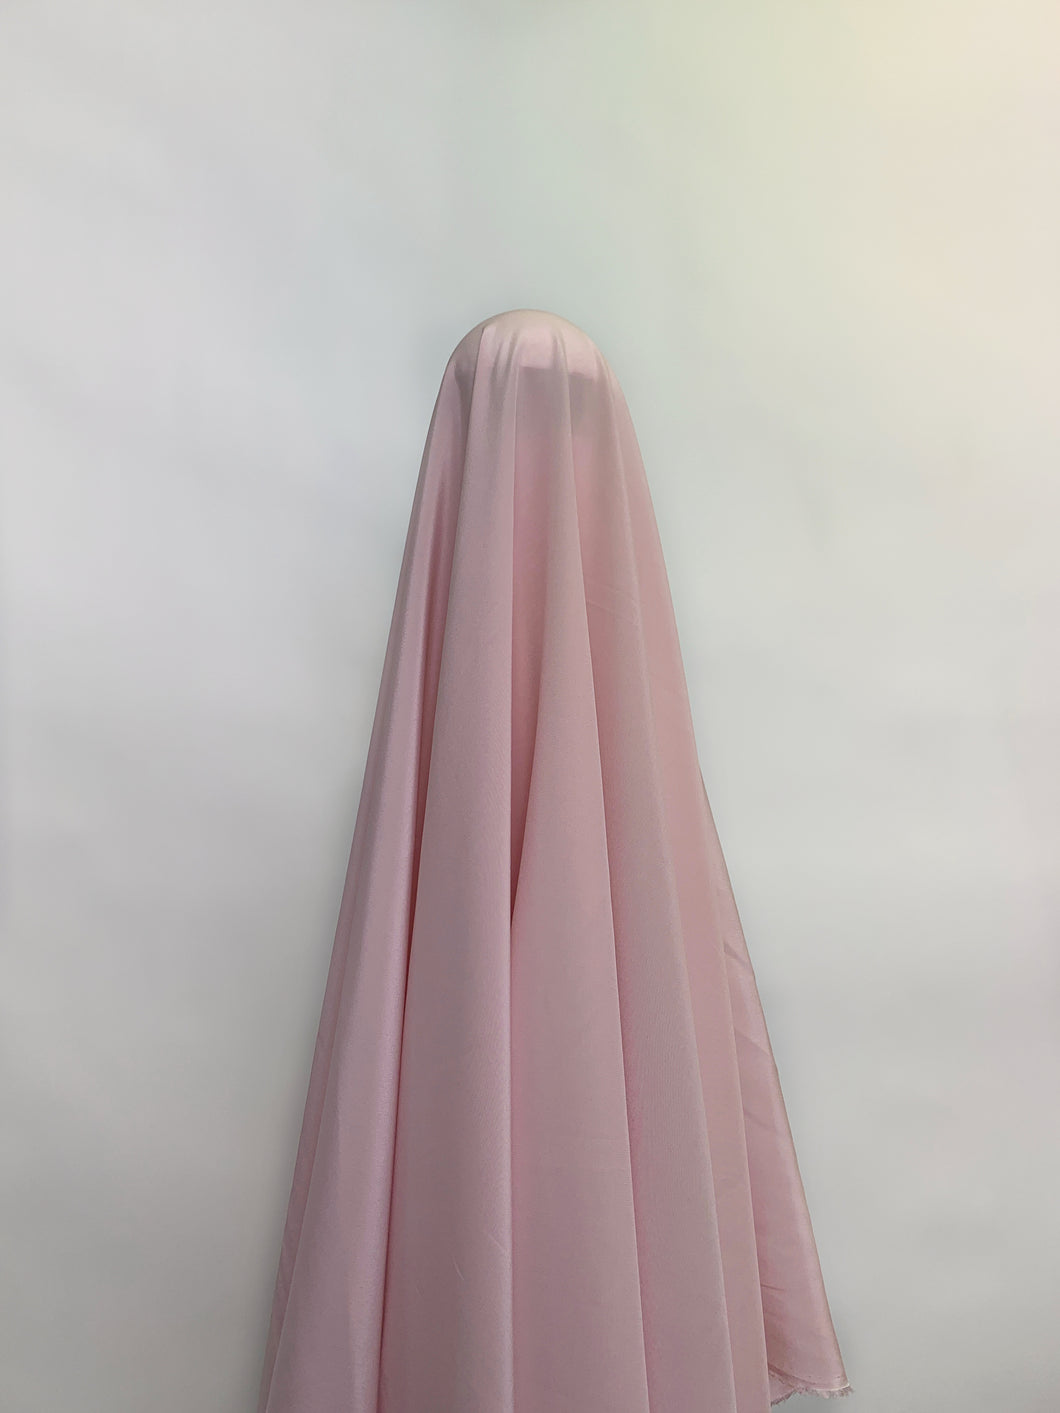 Pink Lemonade Silk Crepe de Chine fabric